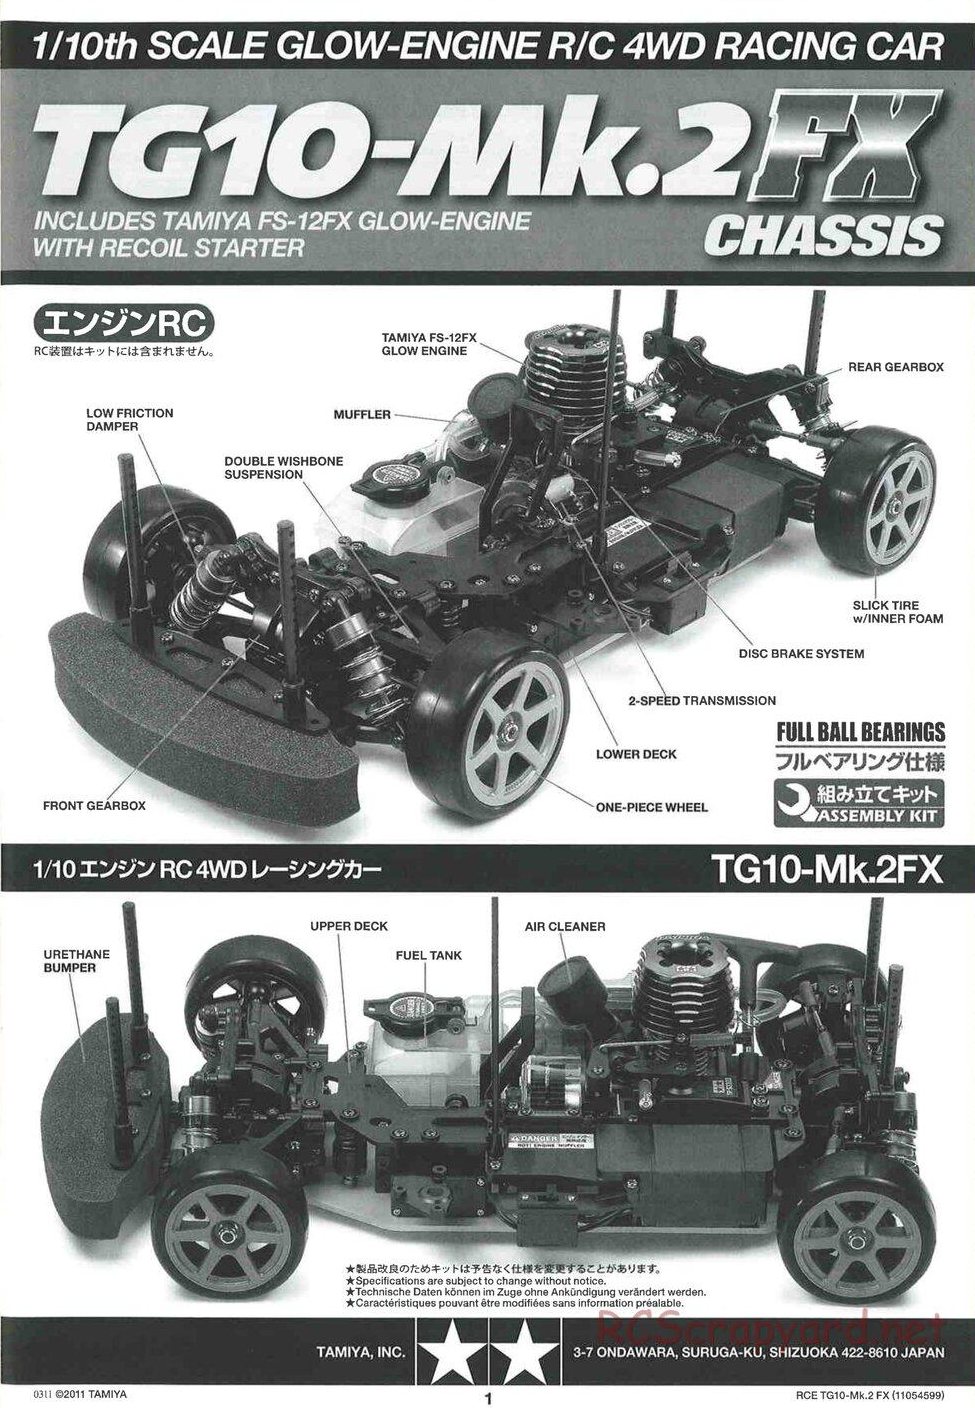 Tamiya - TG10 Mk.2 FX Chassis - Manual - Page 1